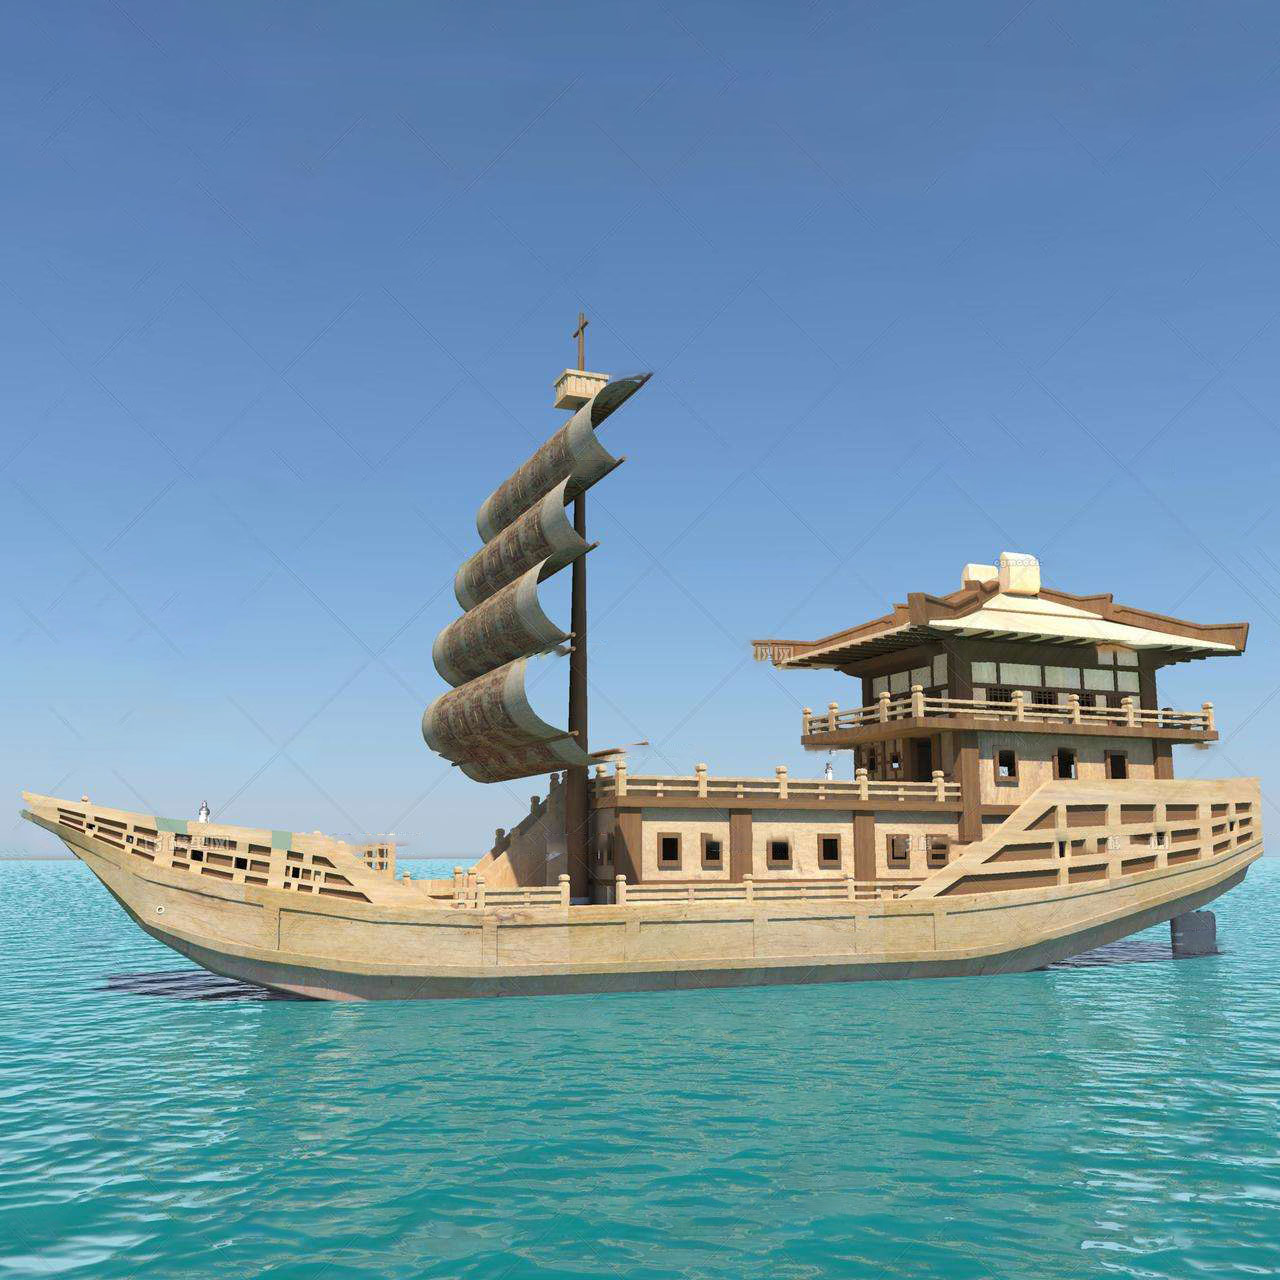 博物馆景观装饰展览船郑和宝船古战船帆船模型厂家定制